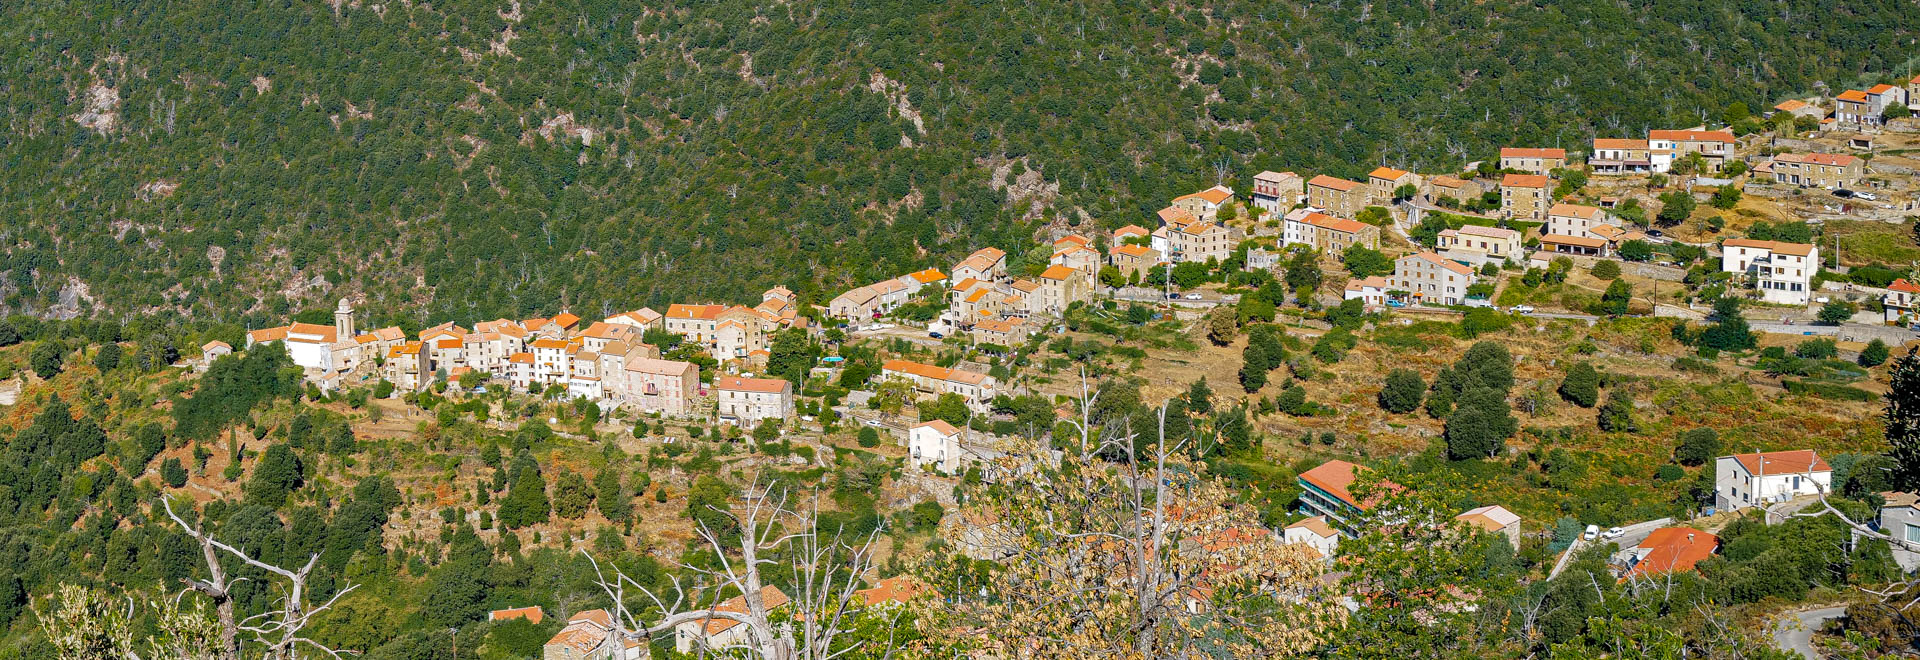 Soccia, Korsika